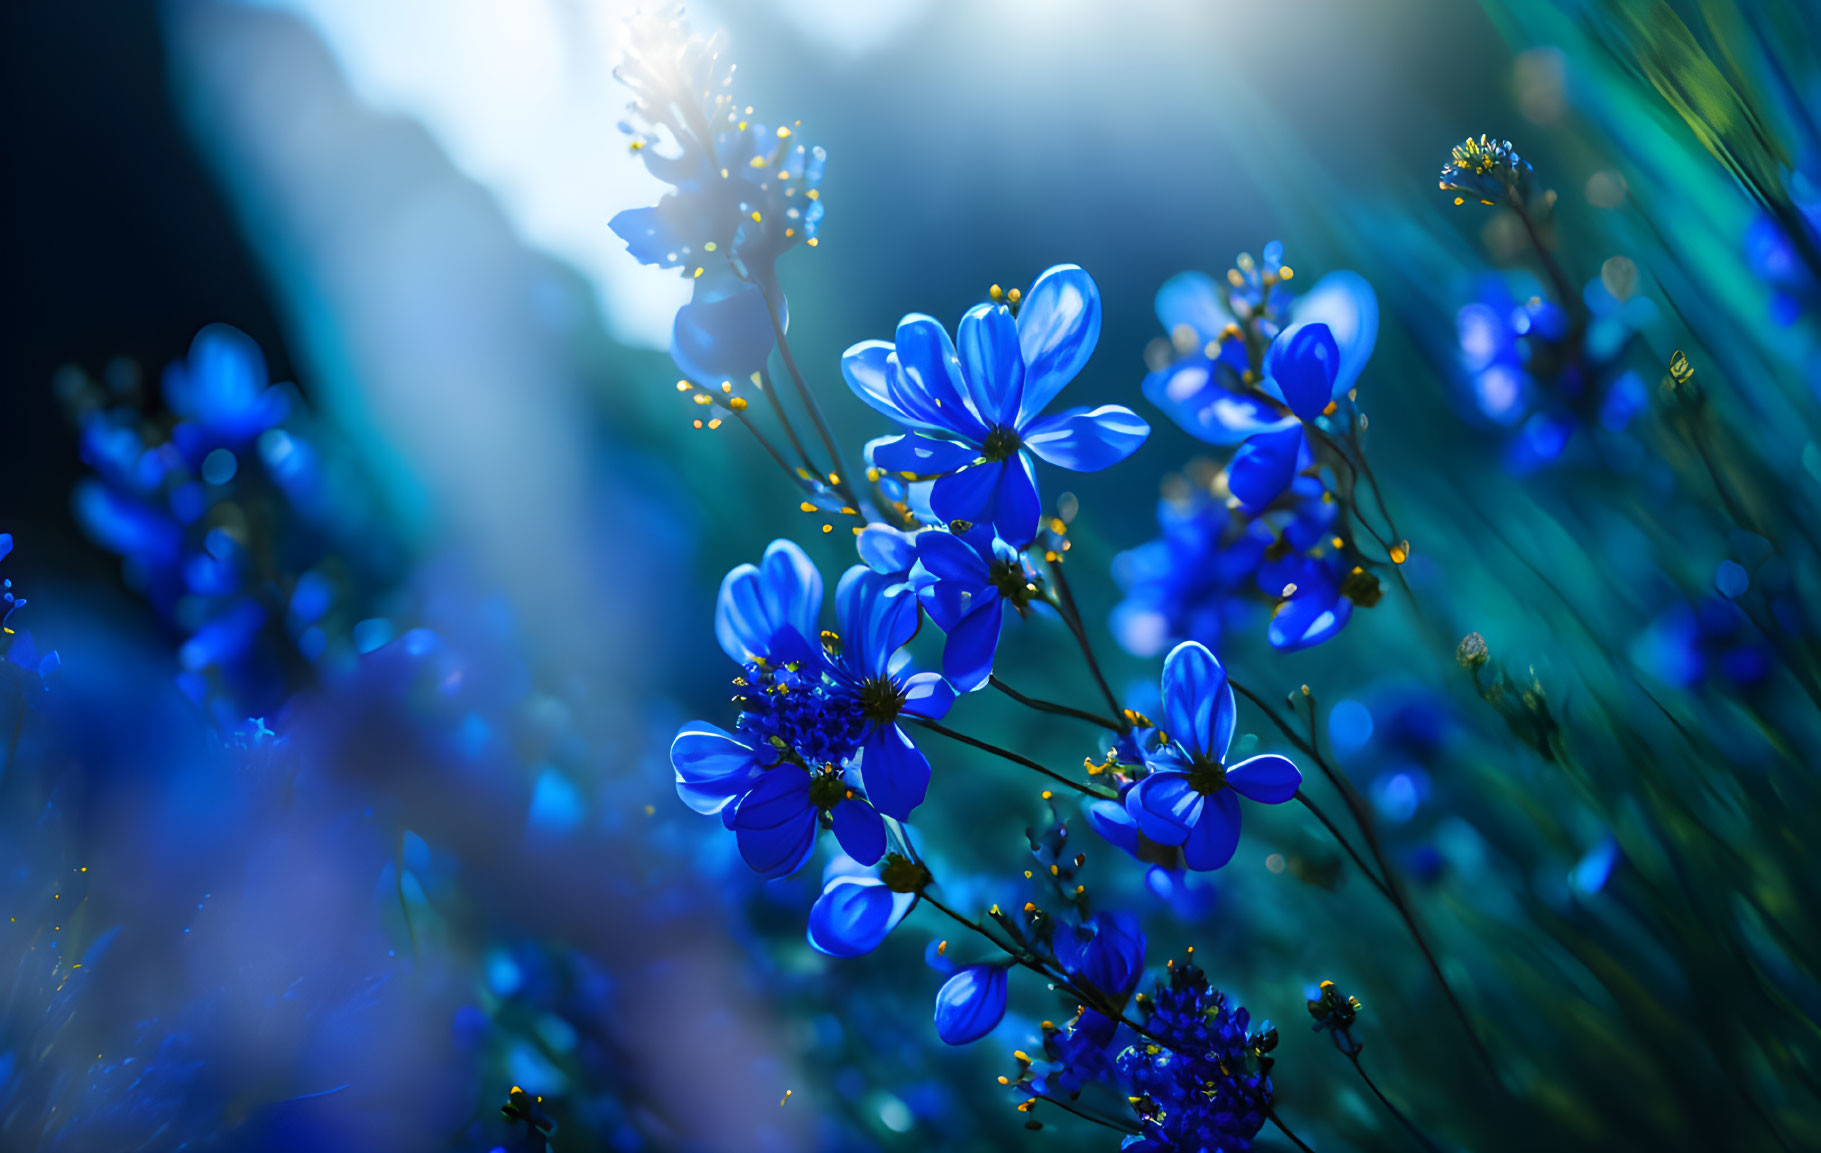 Blue Flowers in a field